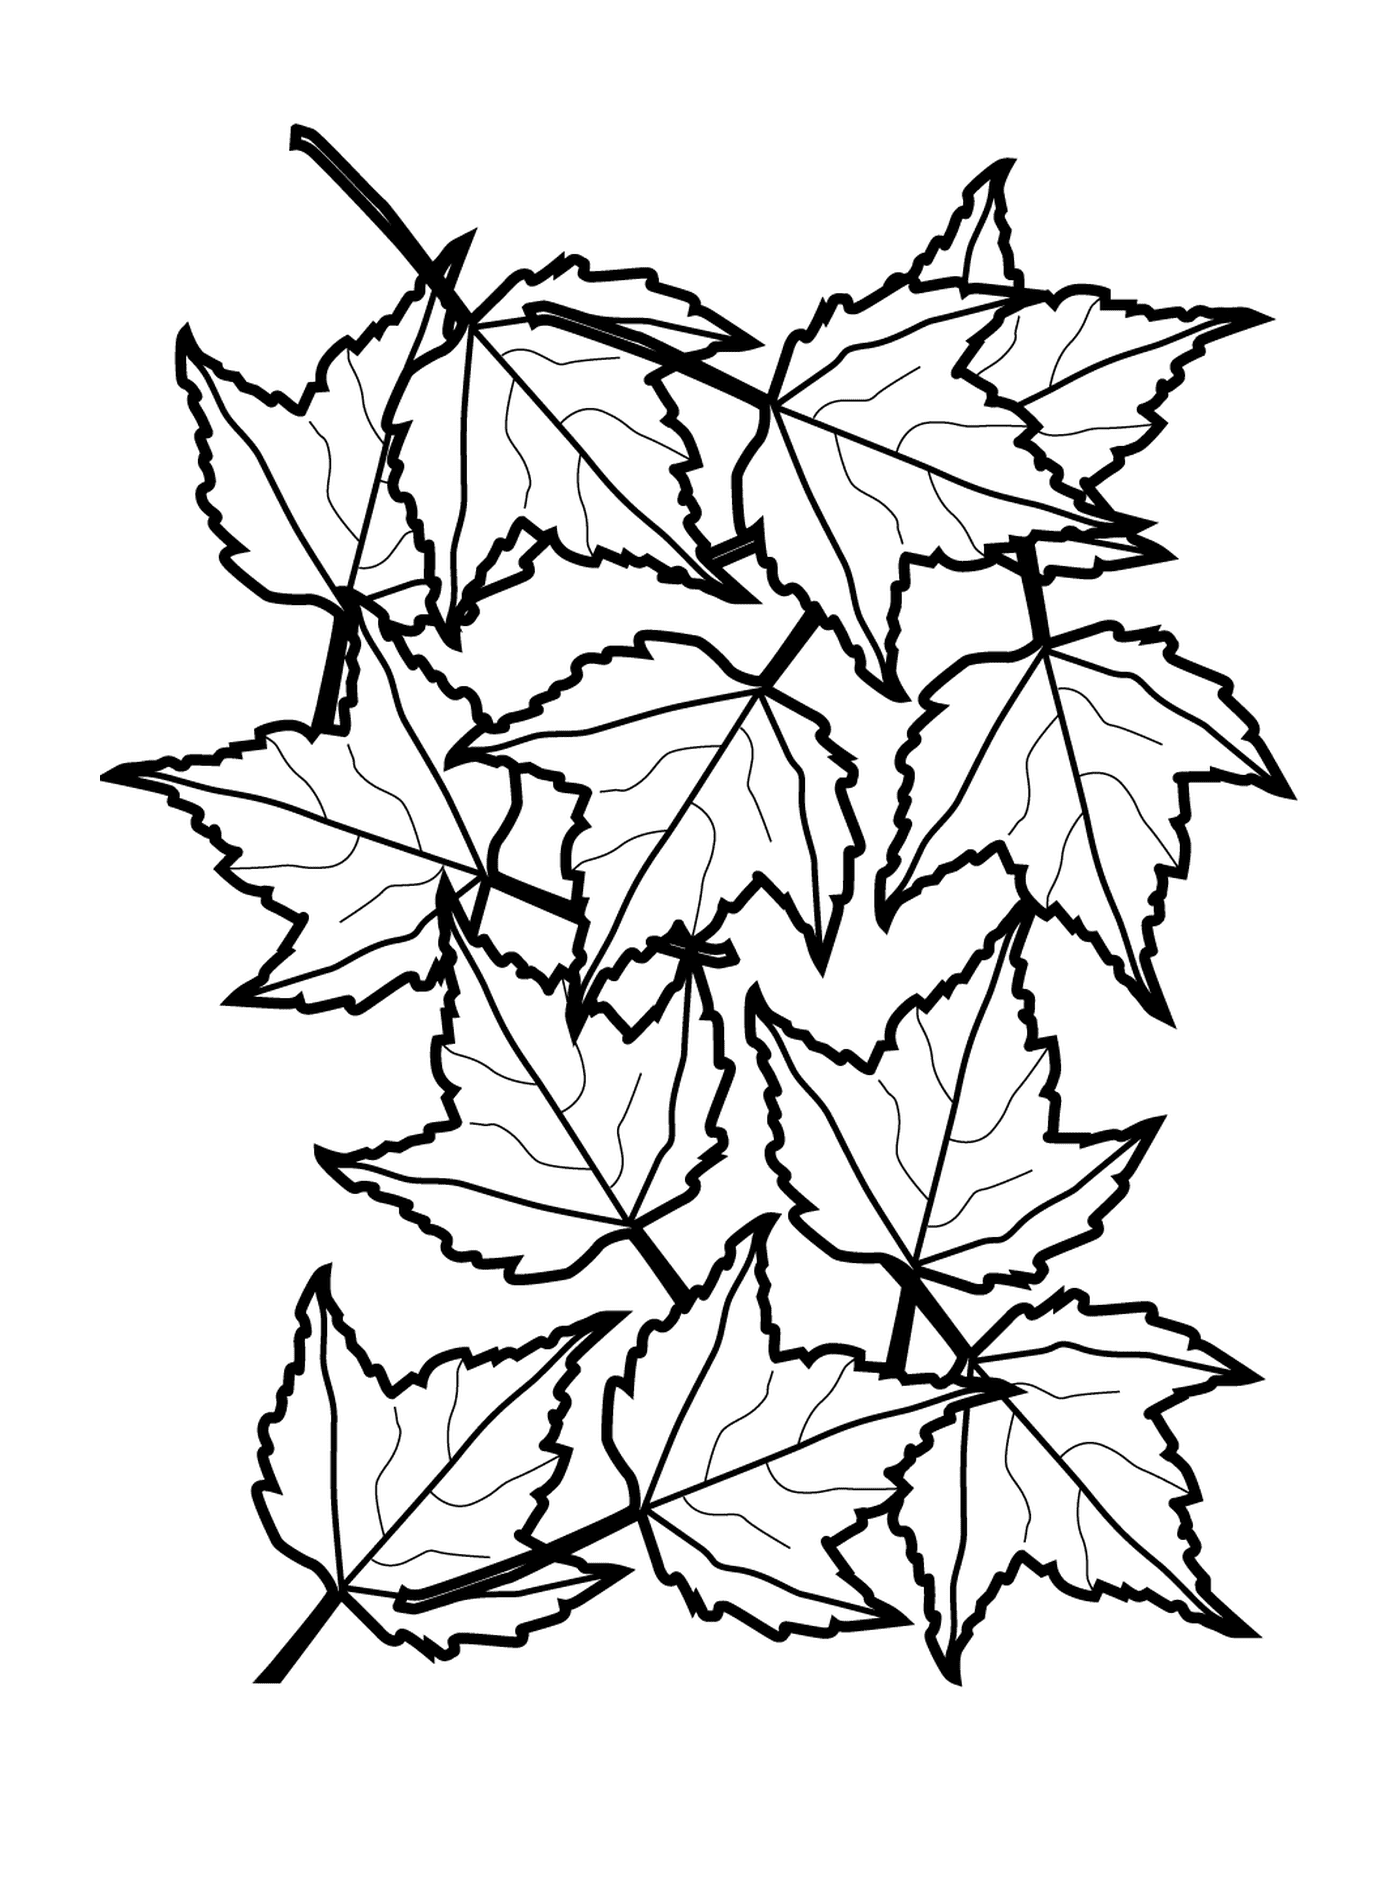  Línea de una multitud de hojas de otoño 